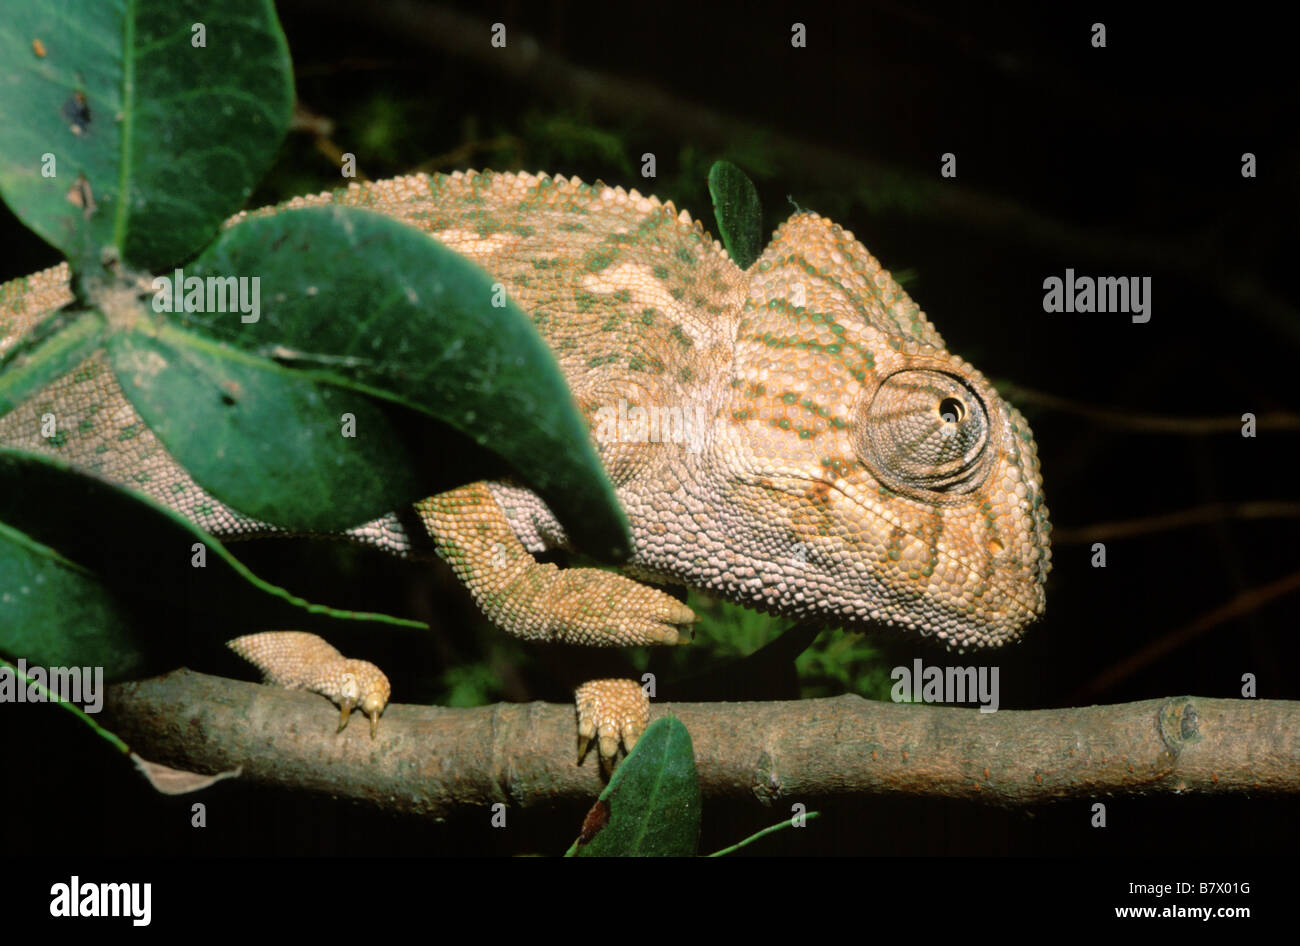 Chameleon (Chameleo chameleon) Stock Photo